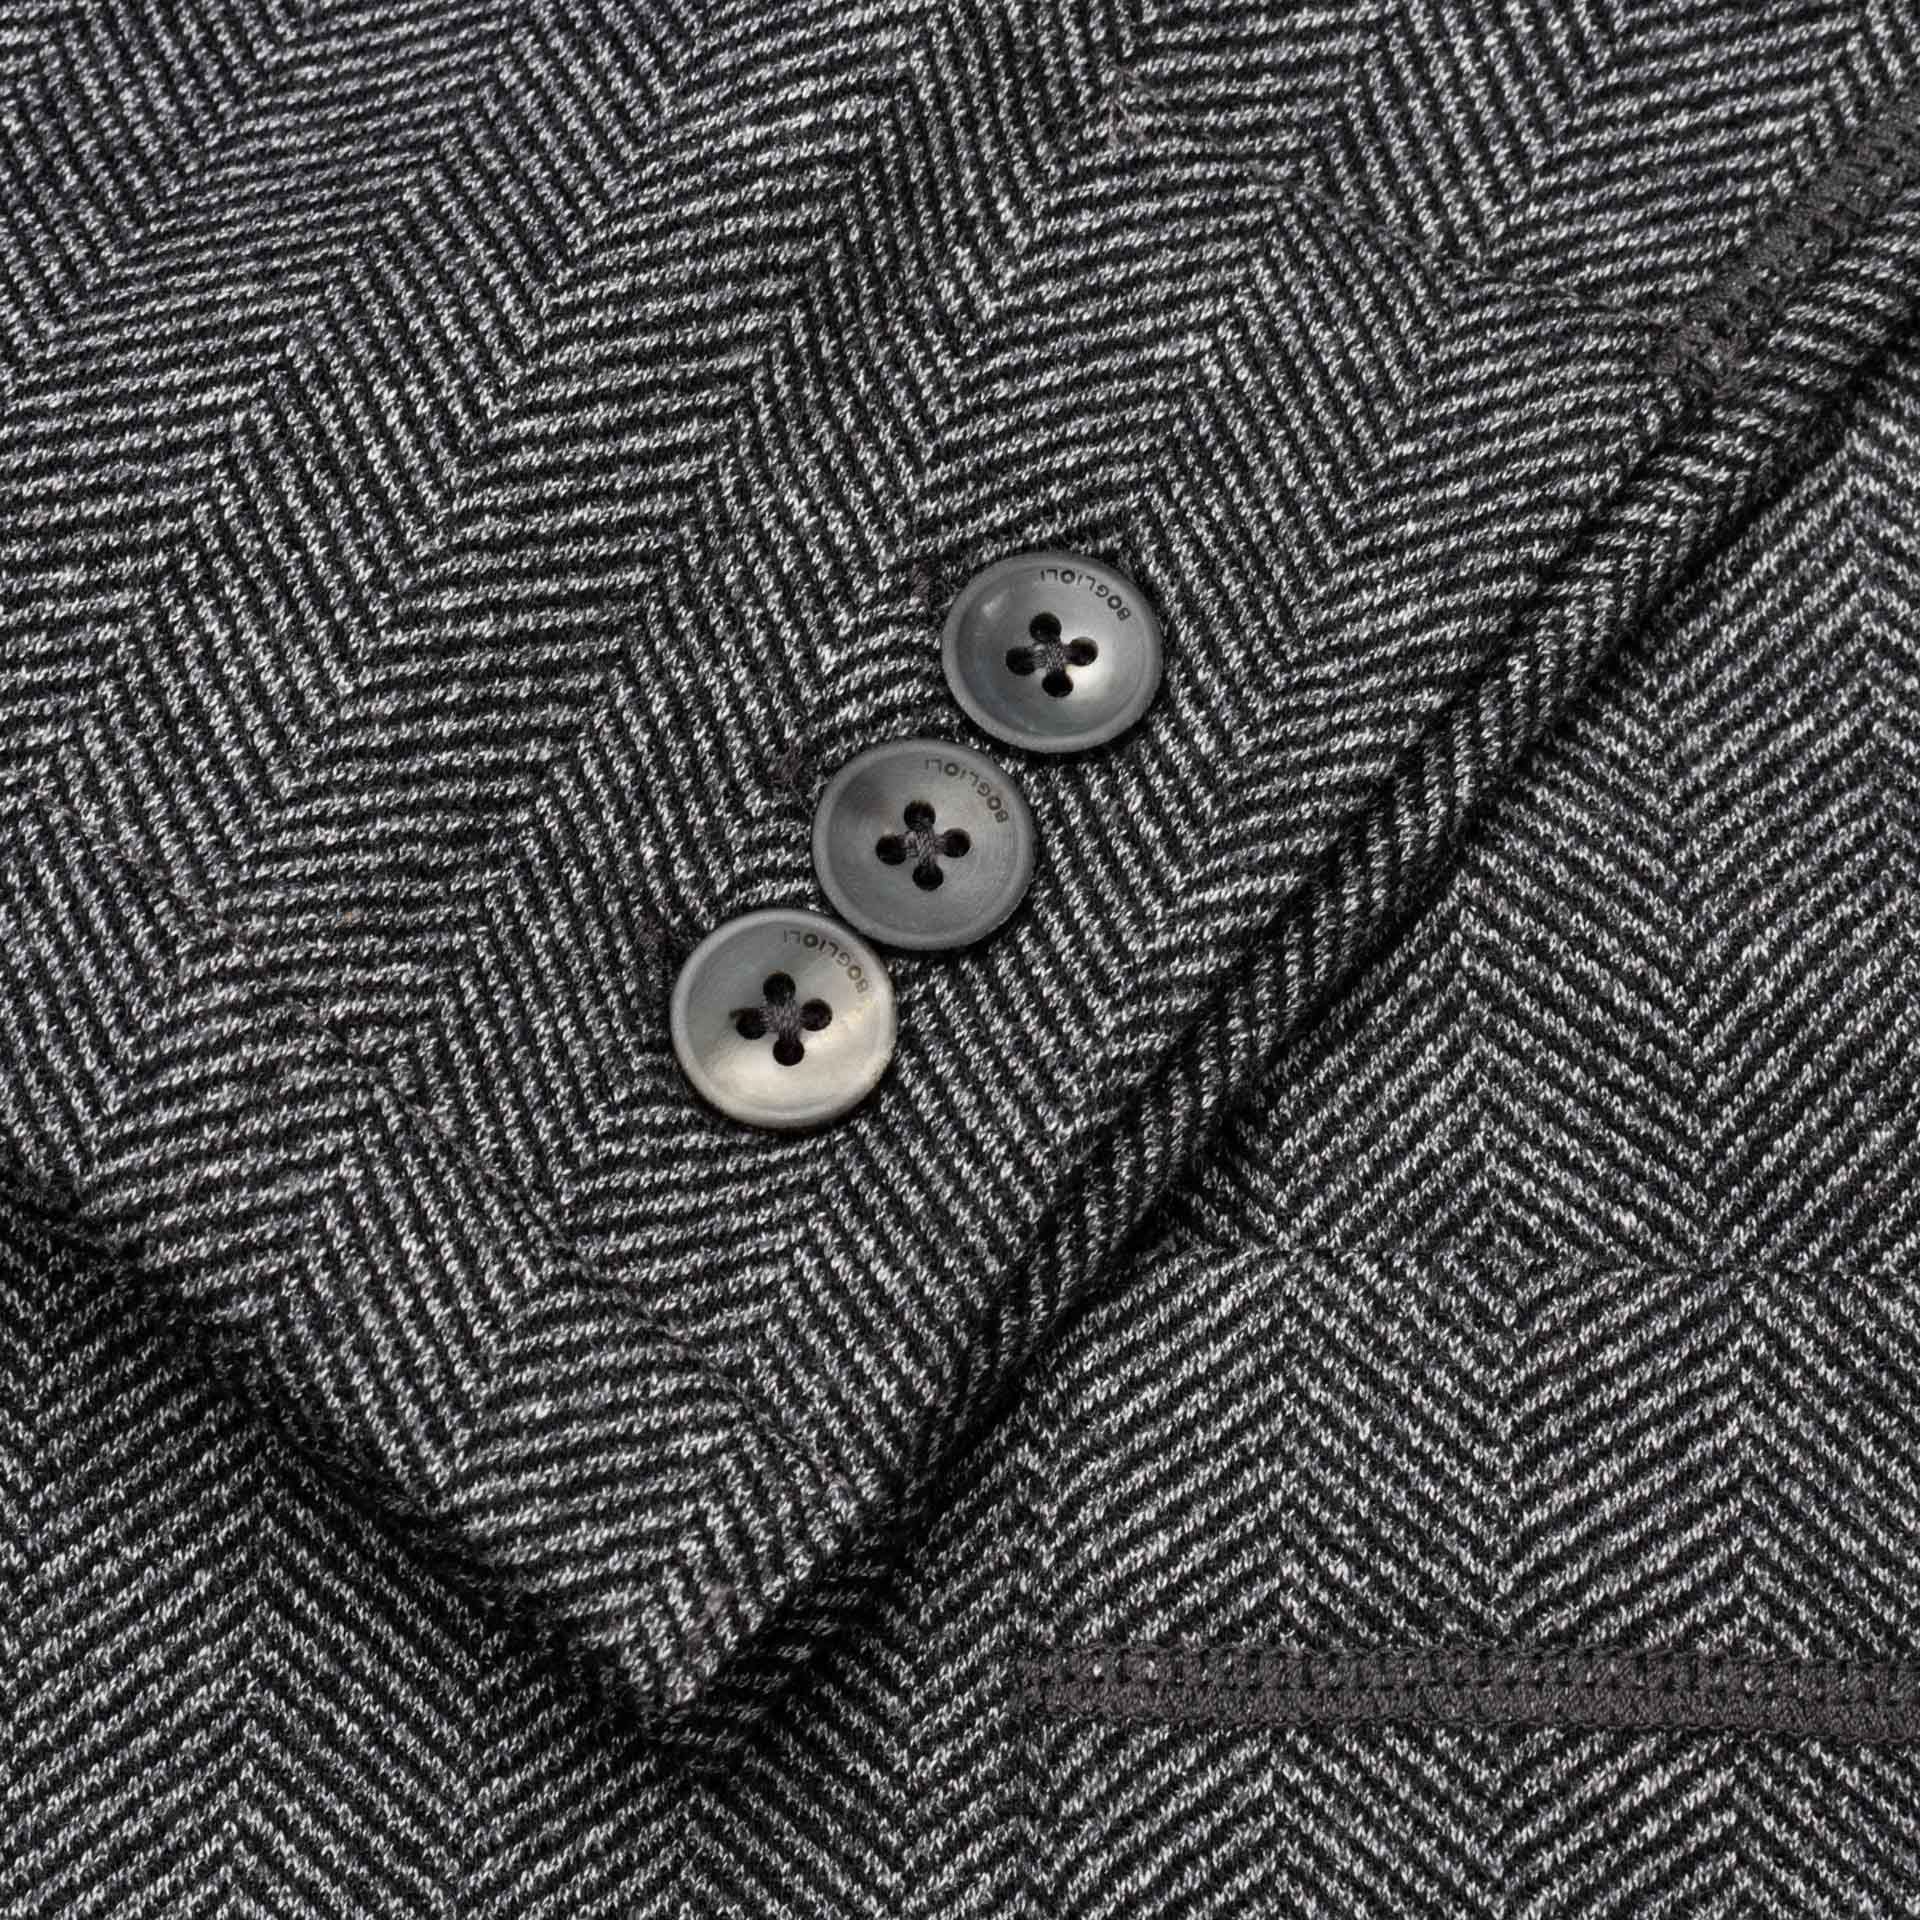 BOGLIOLI Milano "E-Line" Gray Wool-Cotton Unlined Jacket M NEW 40 BOGLIOLI